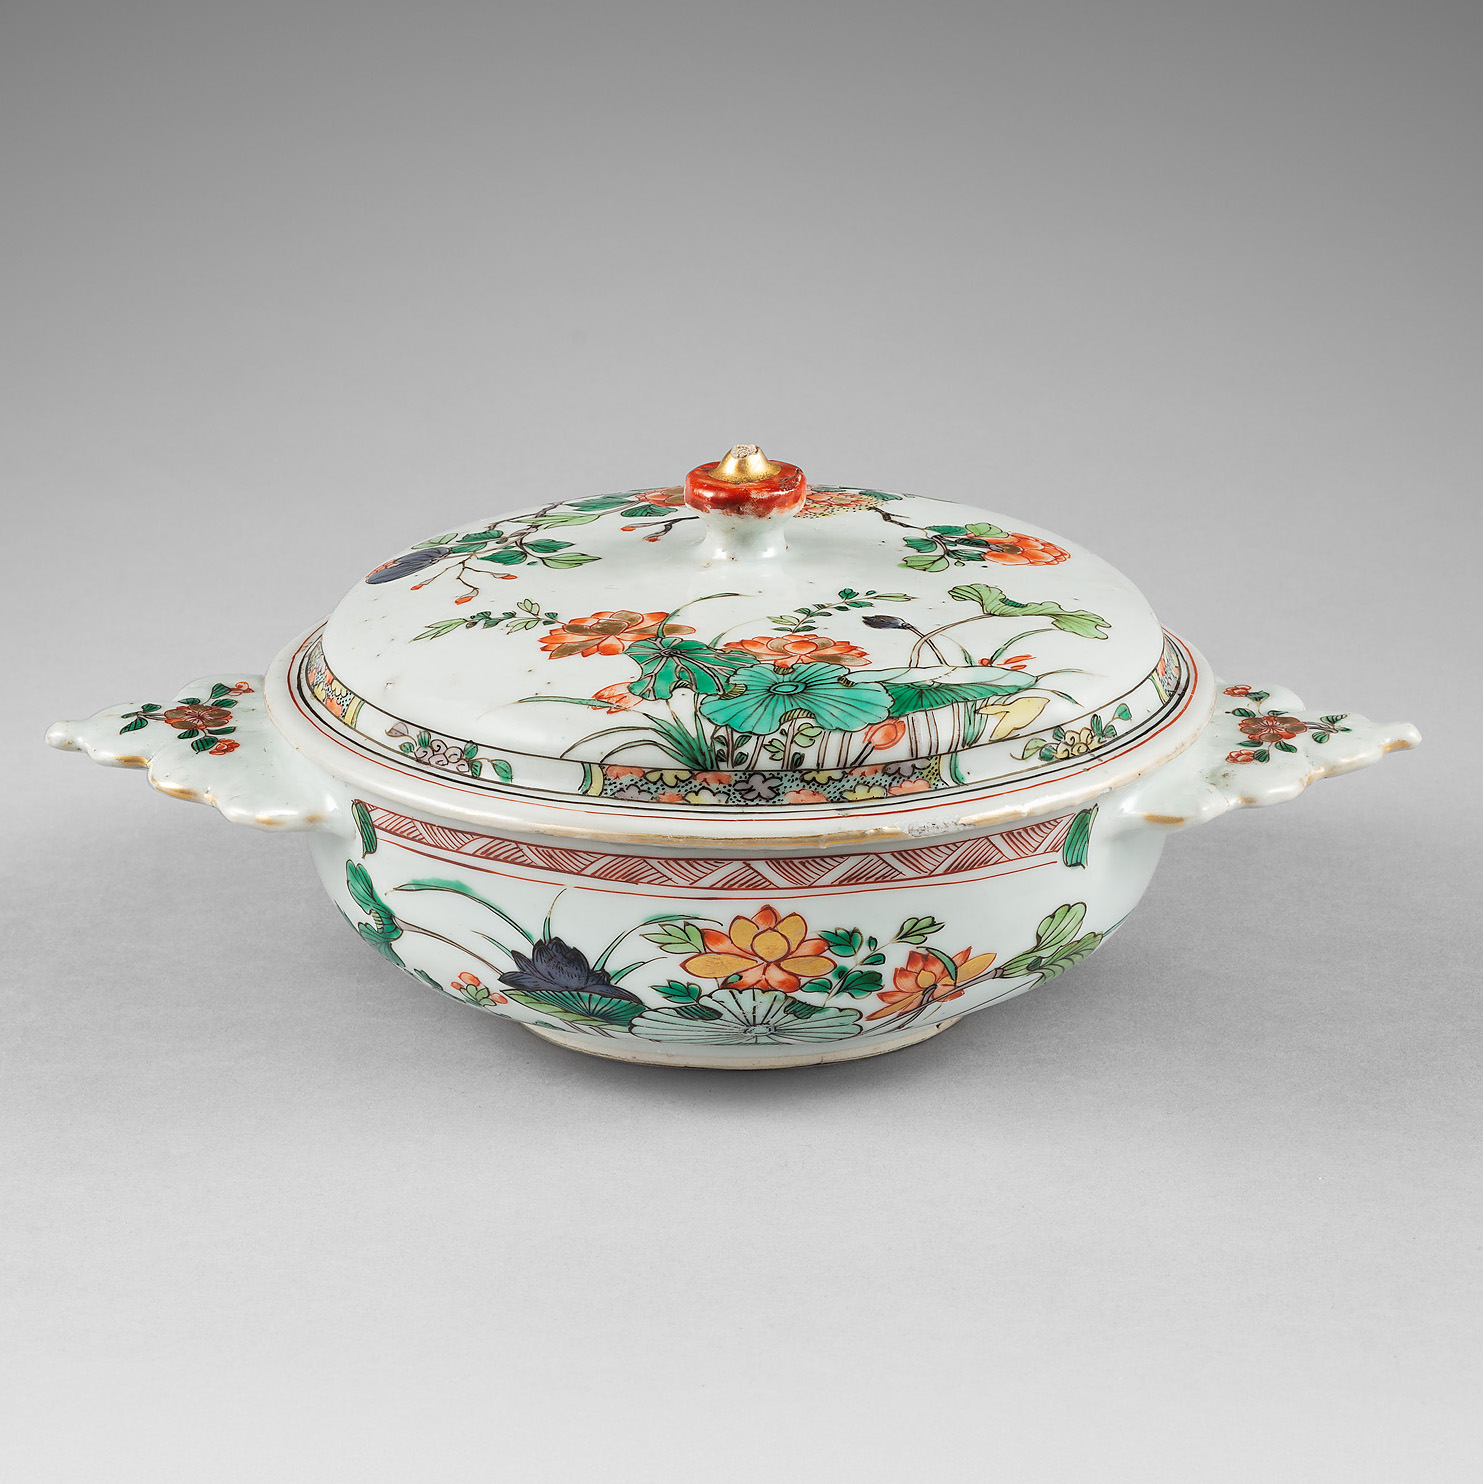 Famille verte Porcelaine kangxi (166-1722), Chine